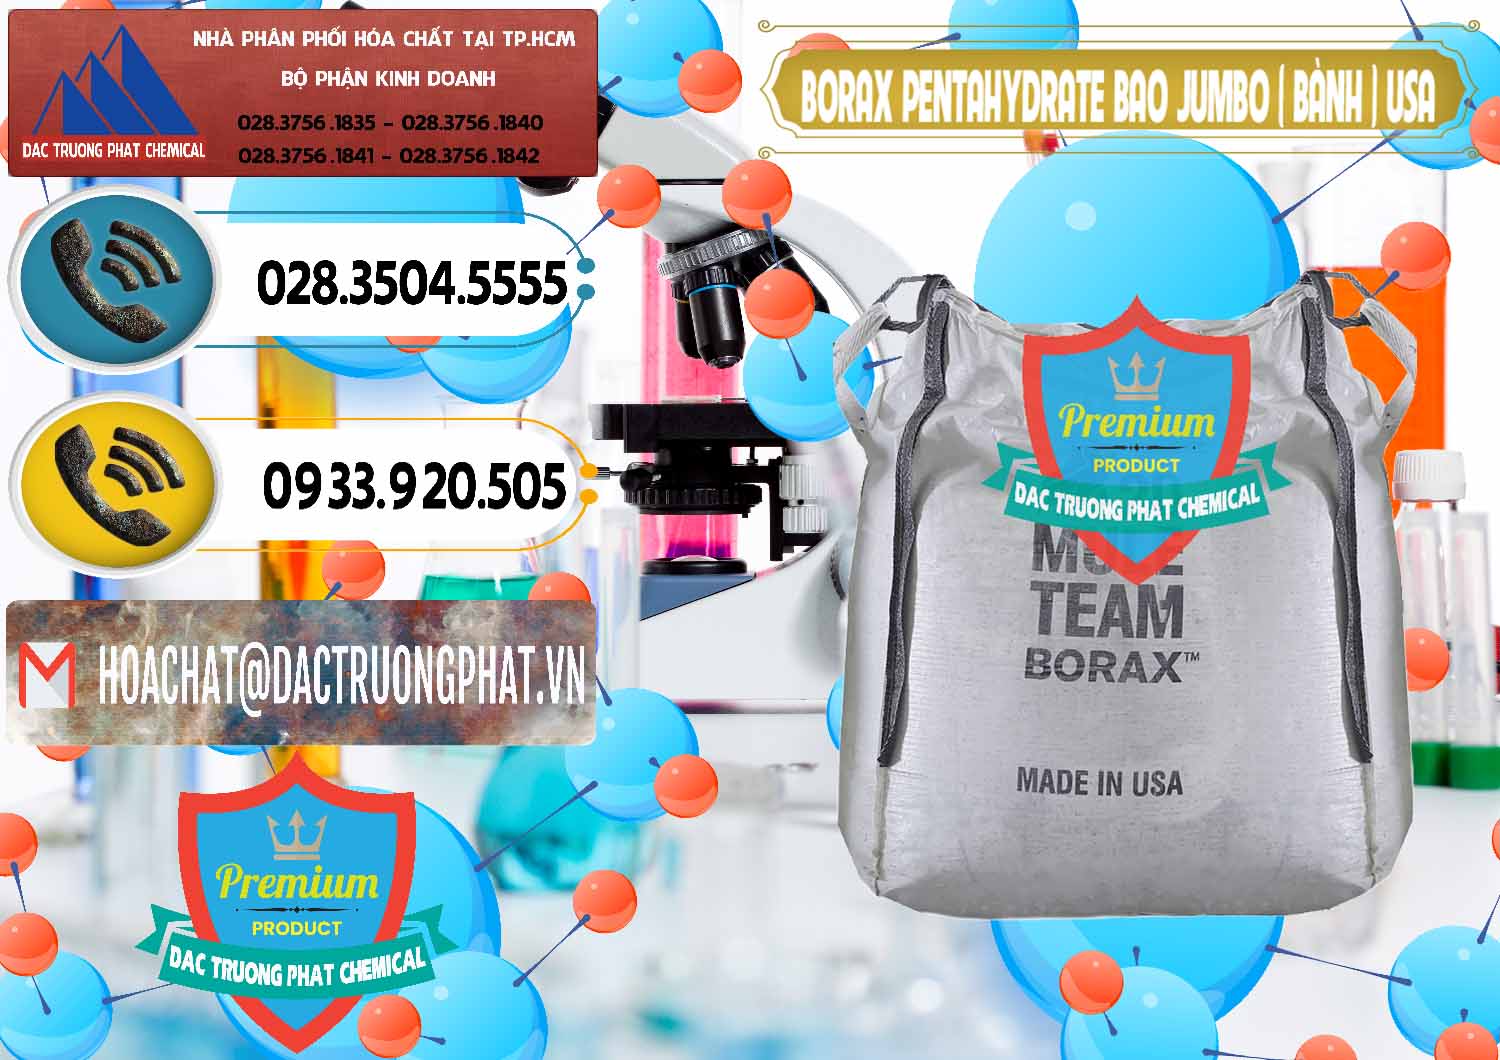 Công ty chuyên nhập khẩu ( bán ) Borax Pentahydrate Bao Jumbo ( Bành ) Mule 20 Team Mỹ Usa - 0278 - Nơi chuyên cung cấp - kinh doanh hóa chất tại TP.HCM - hoachatdetnhuom.vn